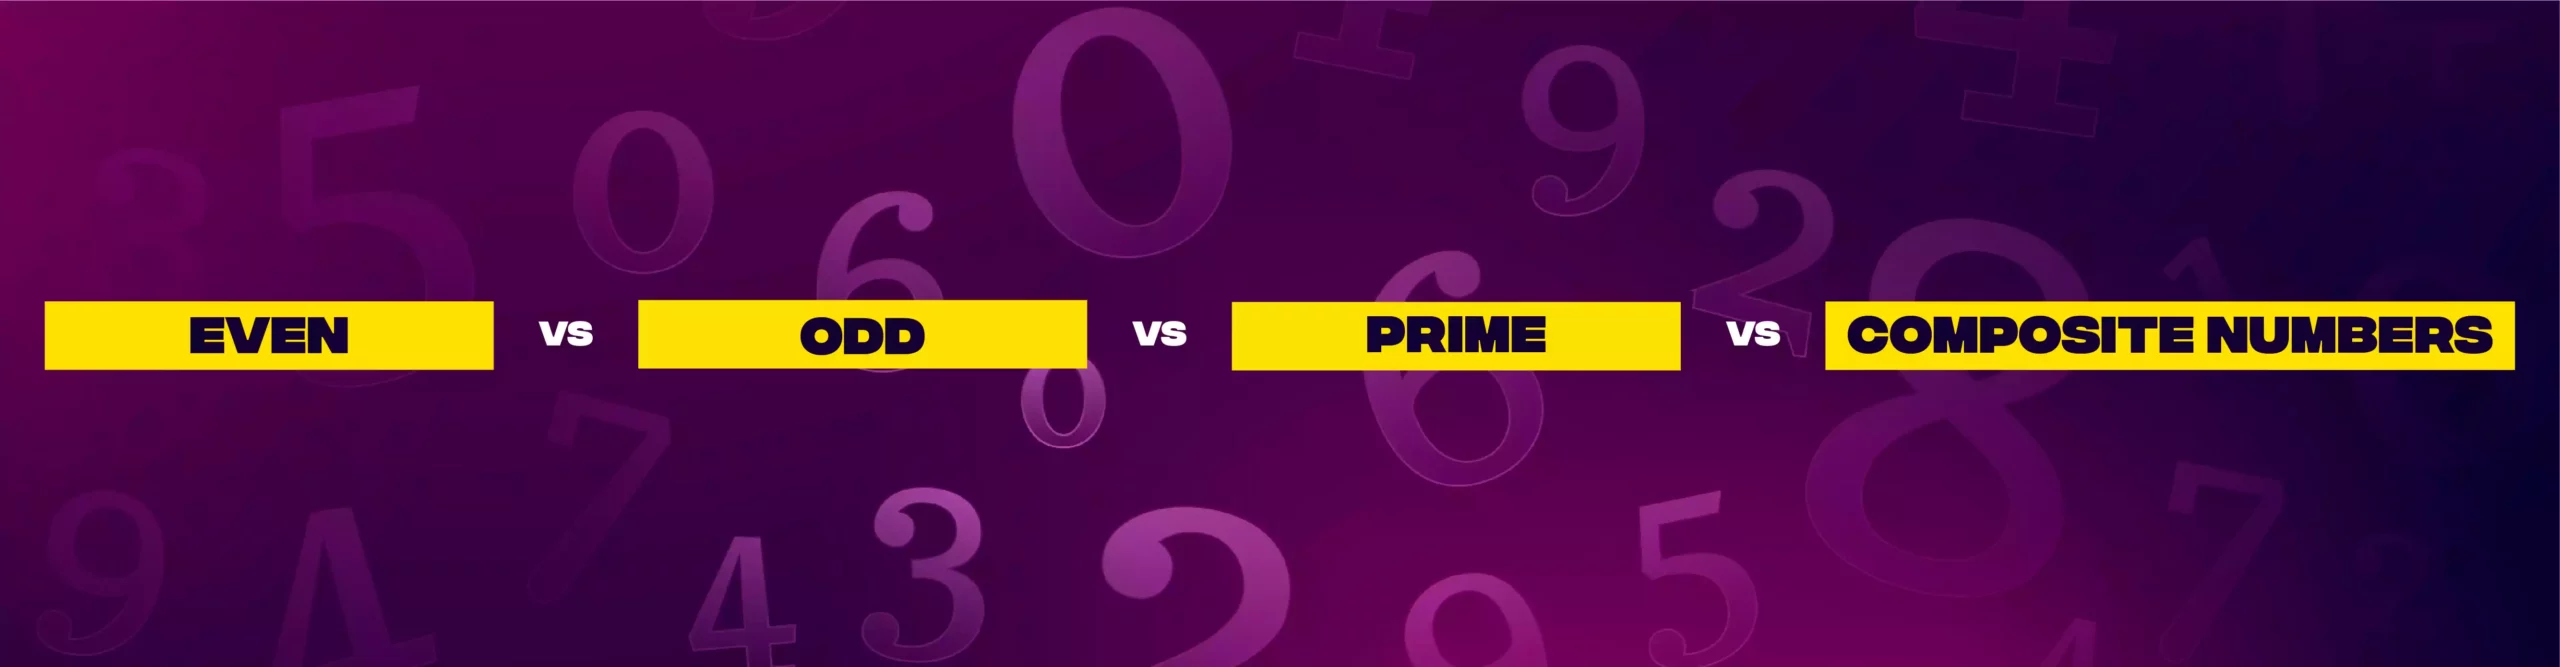 Even vs Odd vs Prime vs Composite Numbers